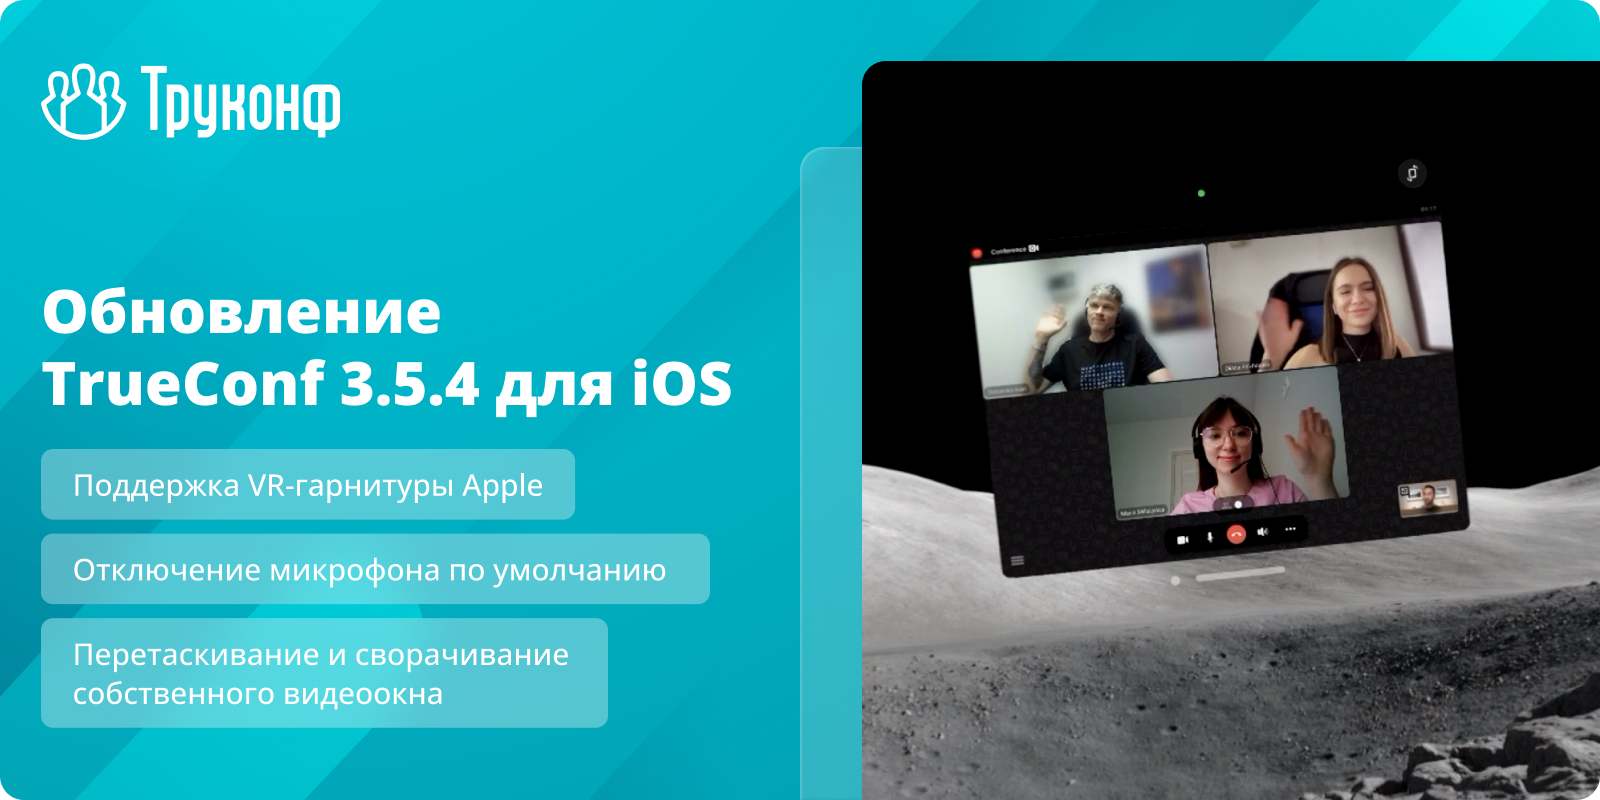 Обновление iOS 3.5.4: поддержка VR-гарнитуры Apple и отключение микрофона по умолчанию 3